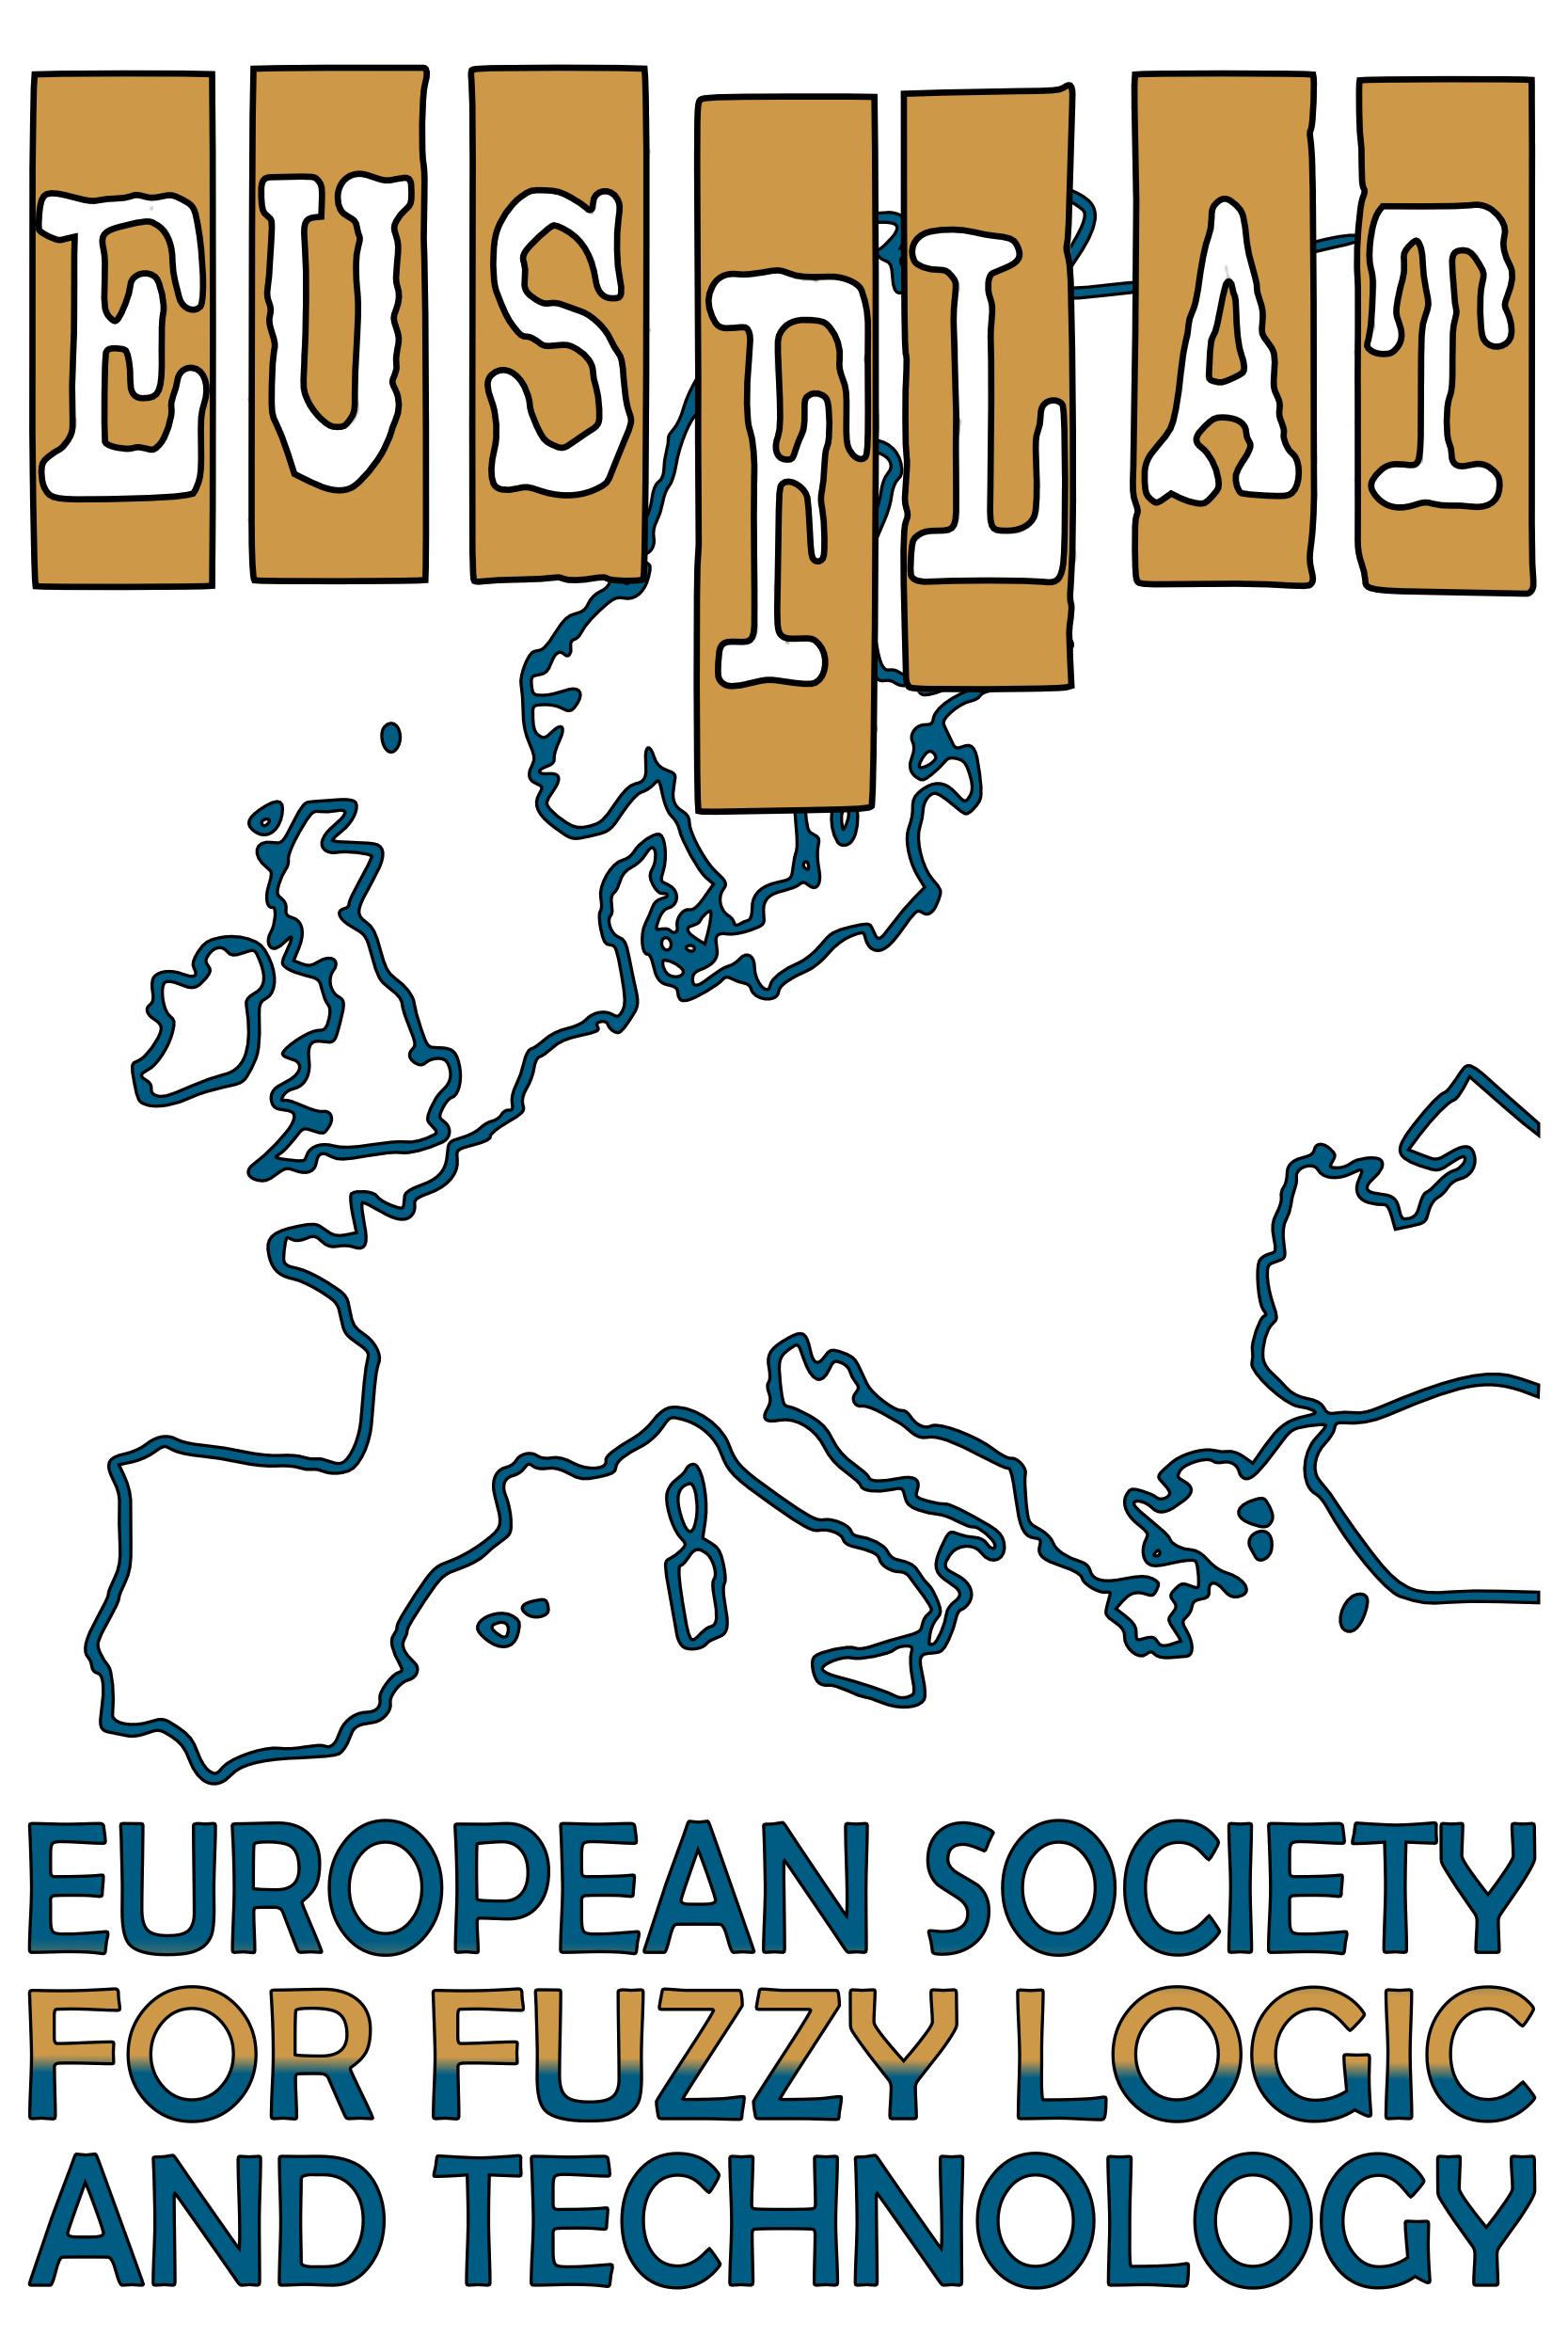 EUSFLAT logo